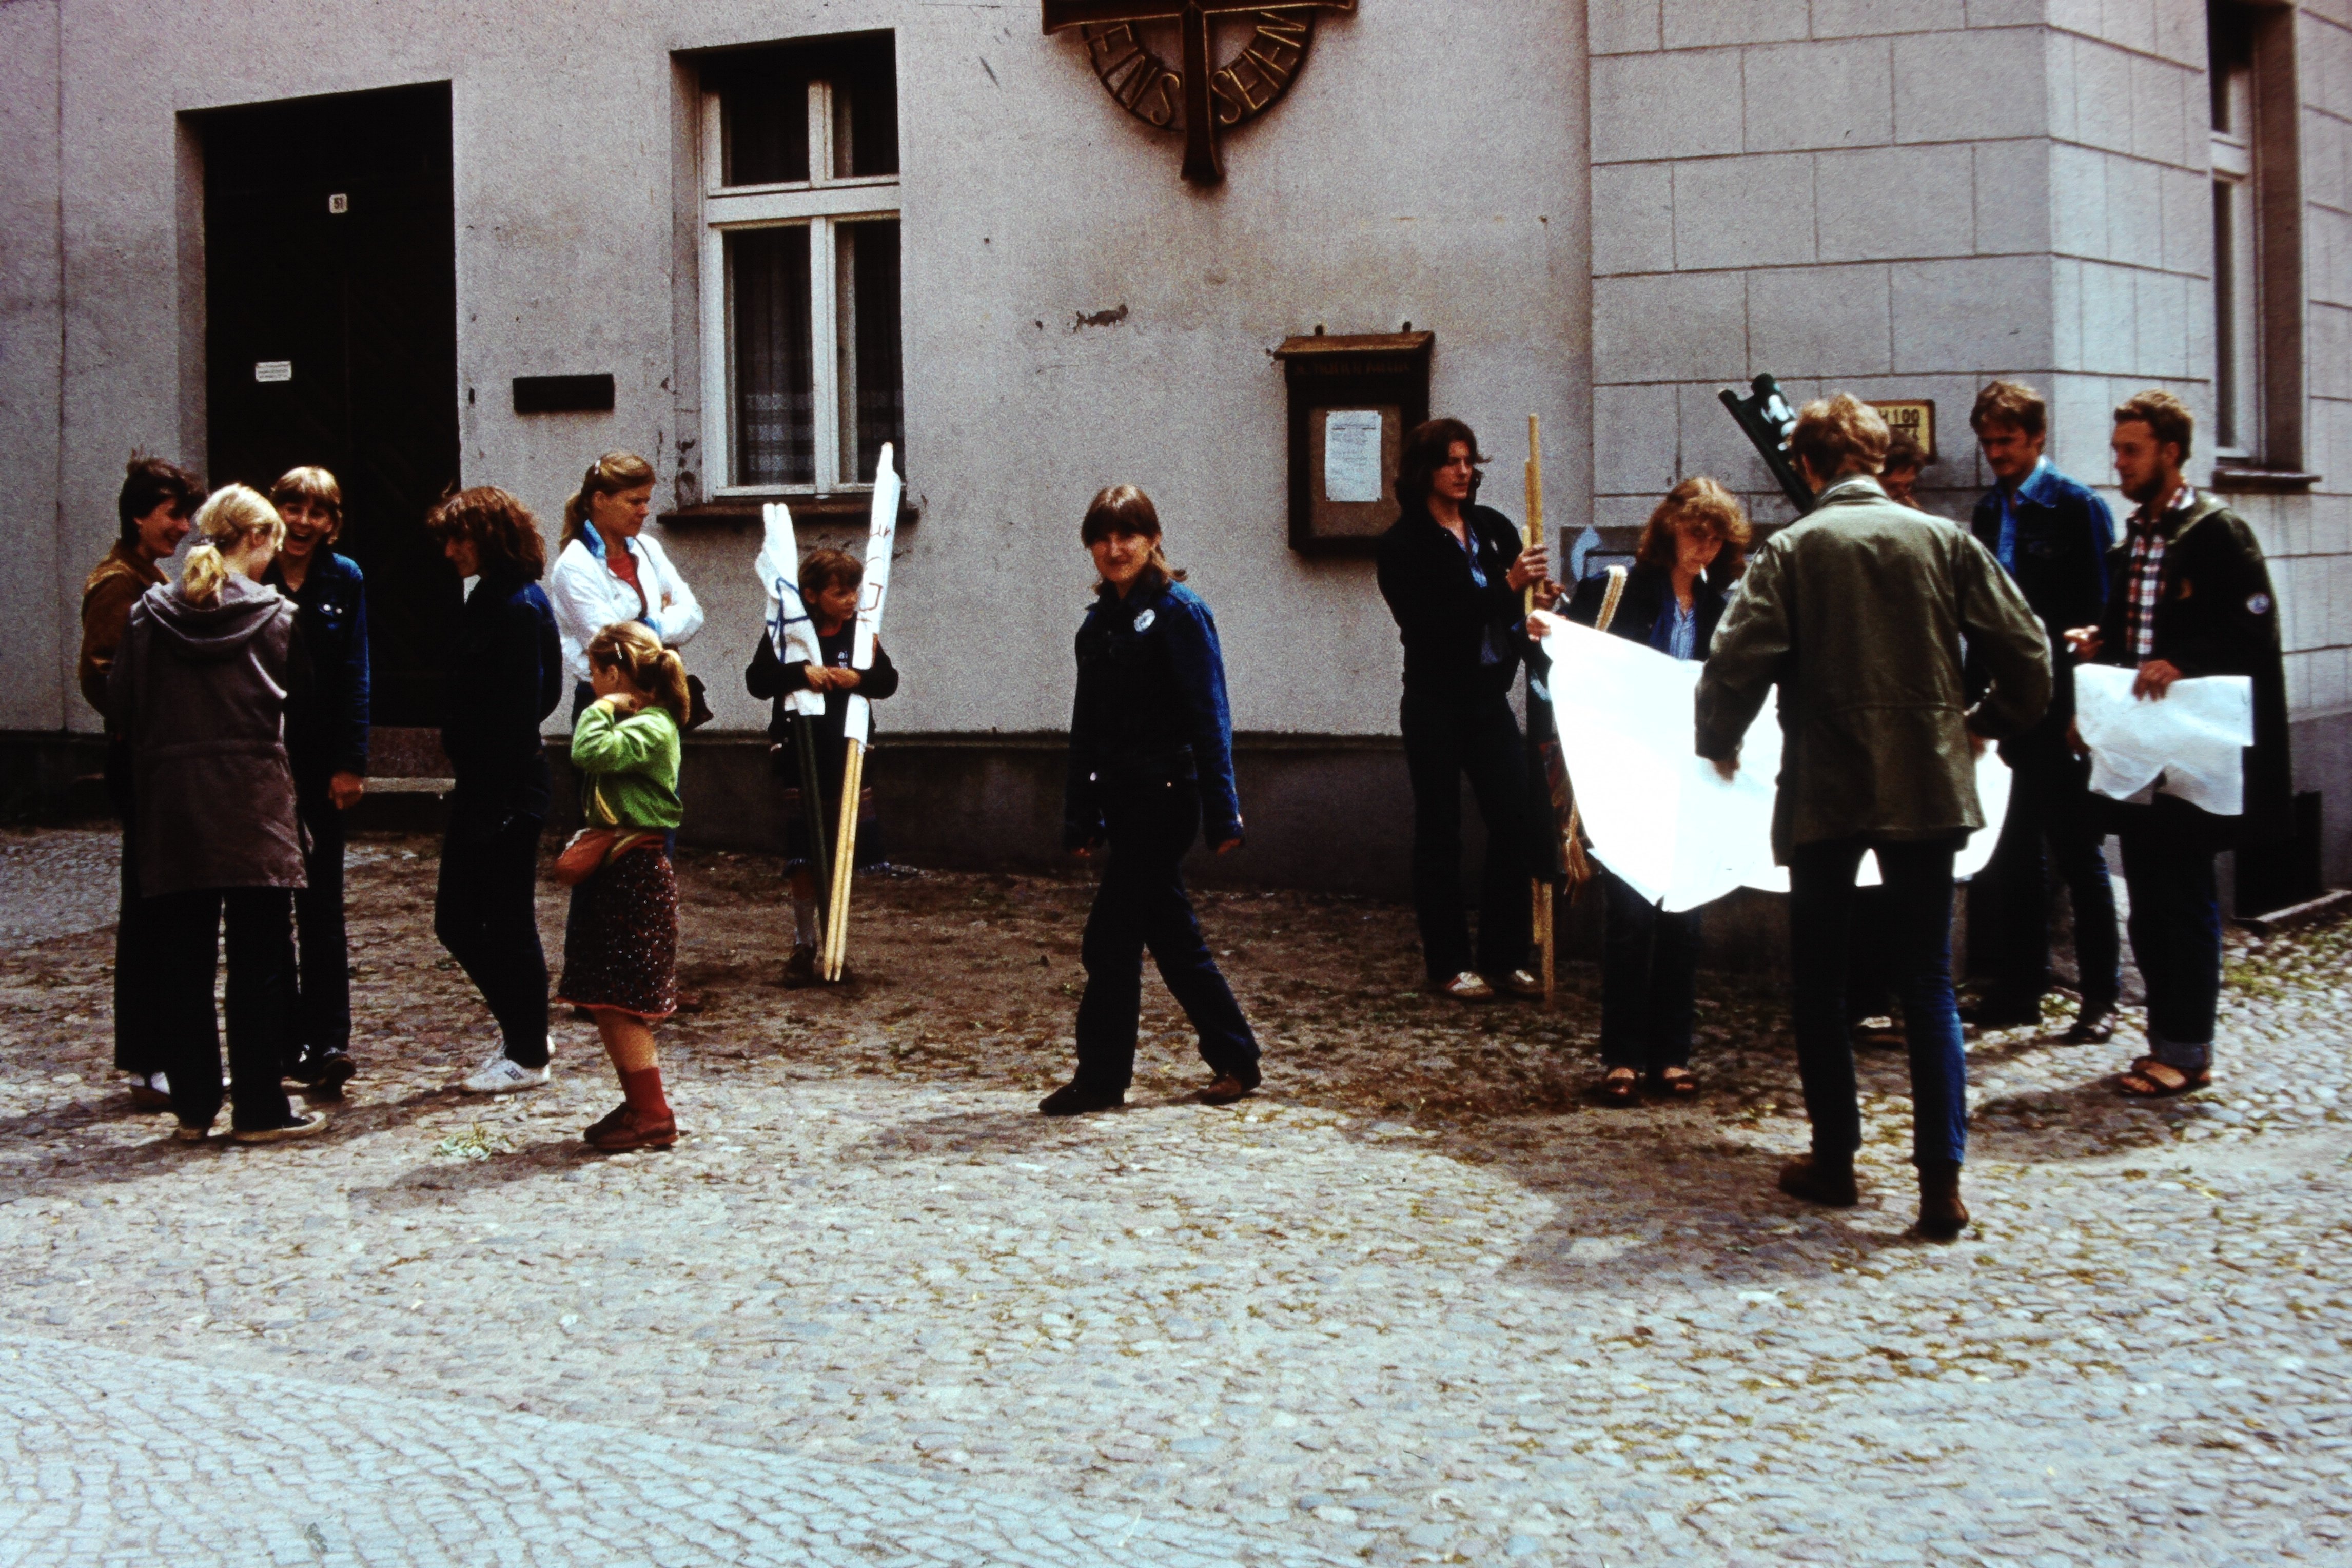 Pfingsttreffen in Kyritz 1982: Gisela Freimark vor dem Köritzer Gemeindehaus (DDR Geschichtsmuseum im Dokumentationszentrum Perleberg CC BY-SA)